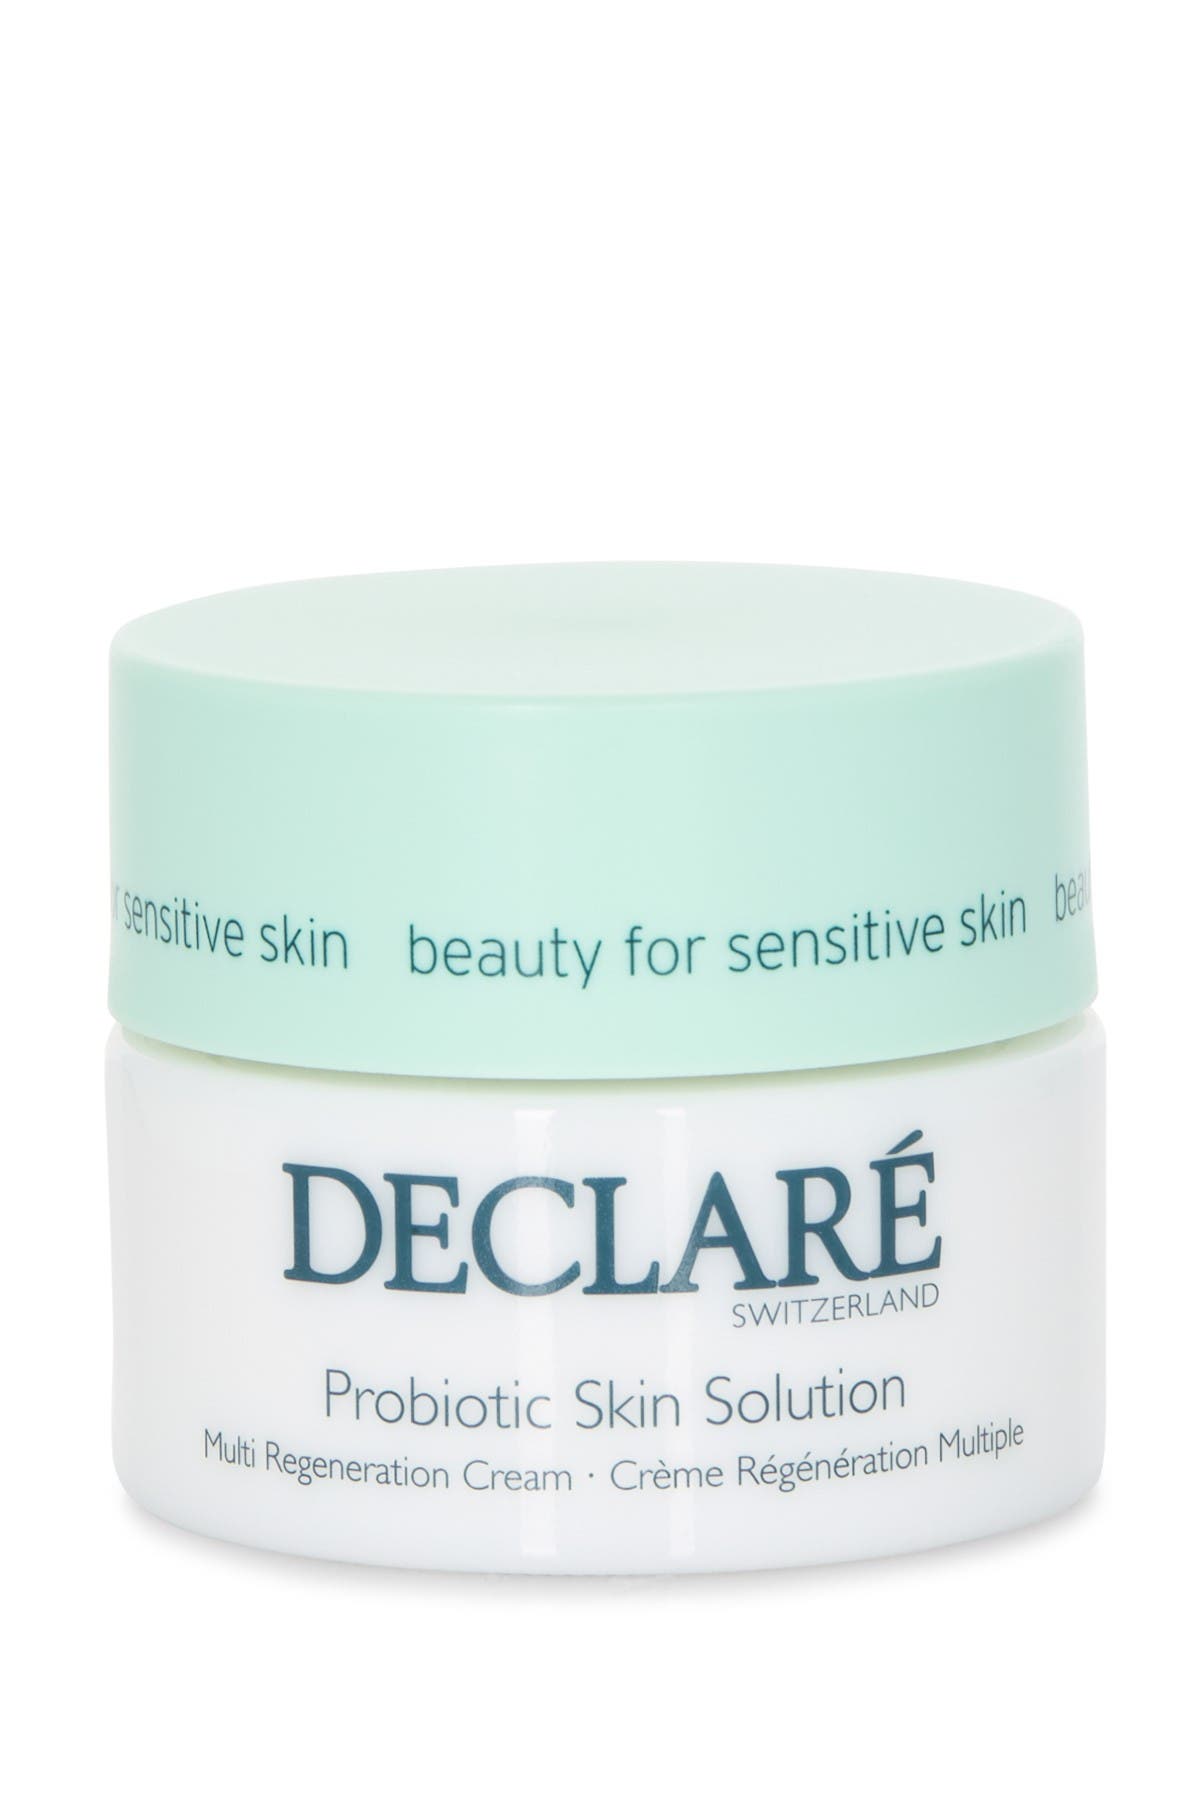 Probiotic Skin Solution Multi Regeneration Cream DECLARE